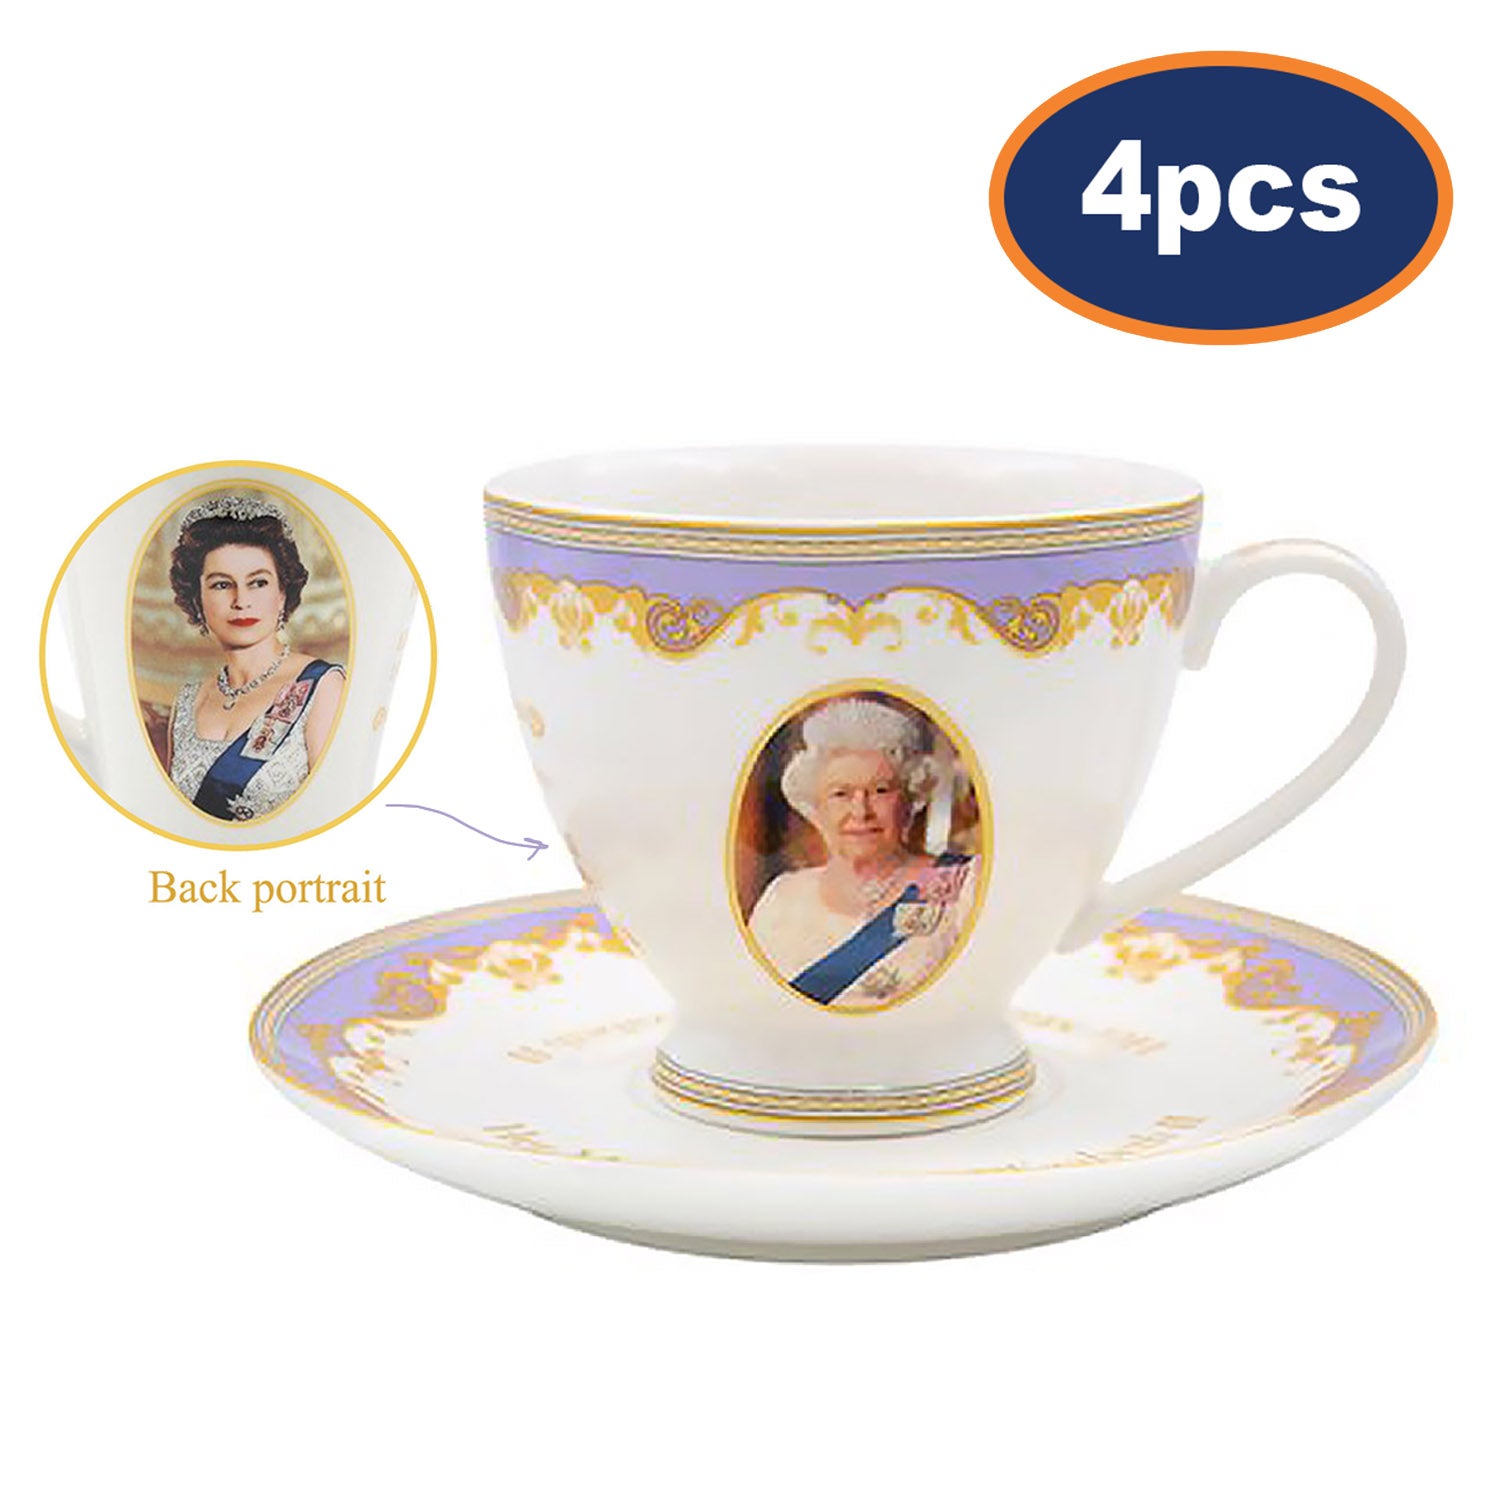 4pcs Queen Elizabeth II 200ml Cup and Saucer Set